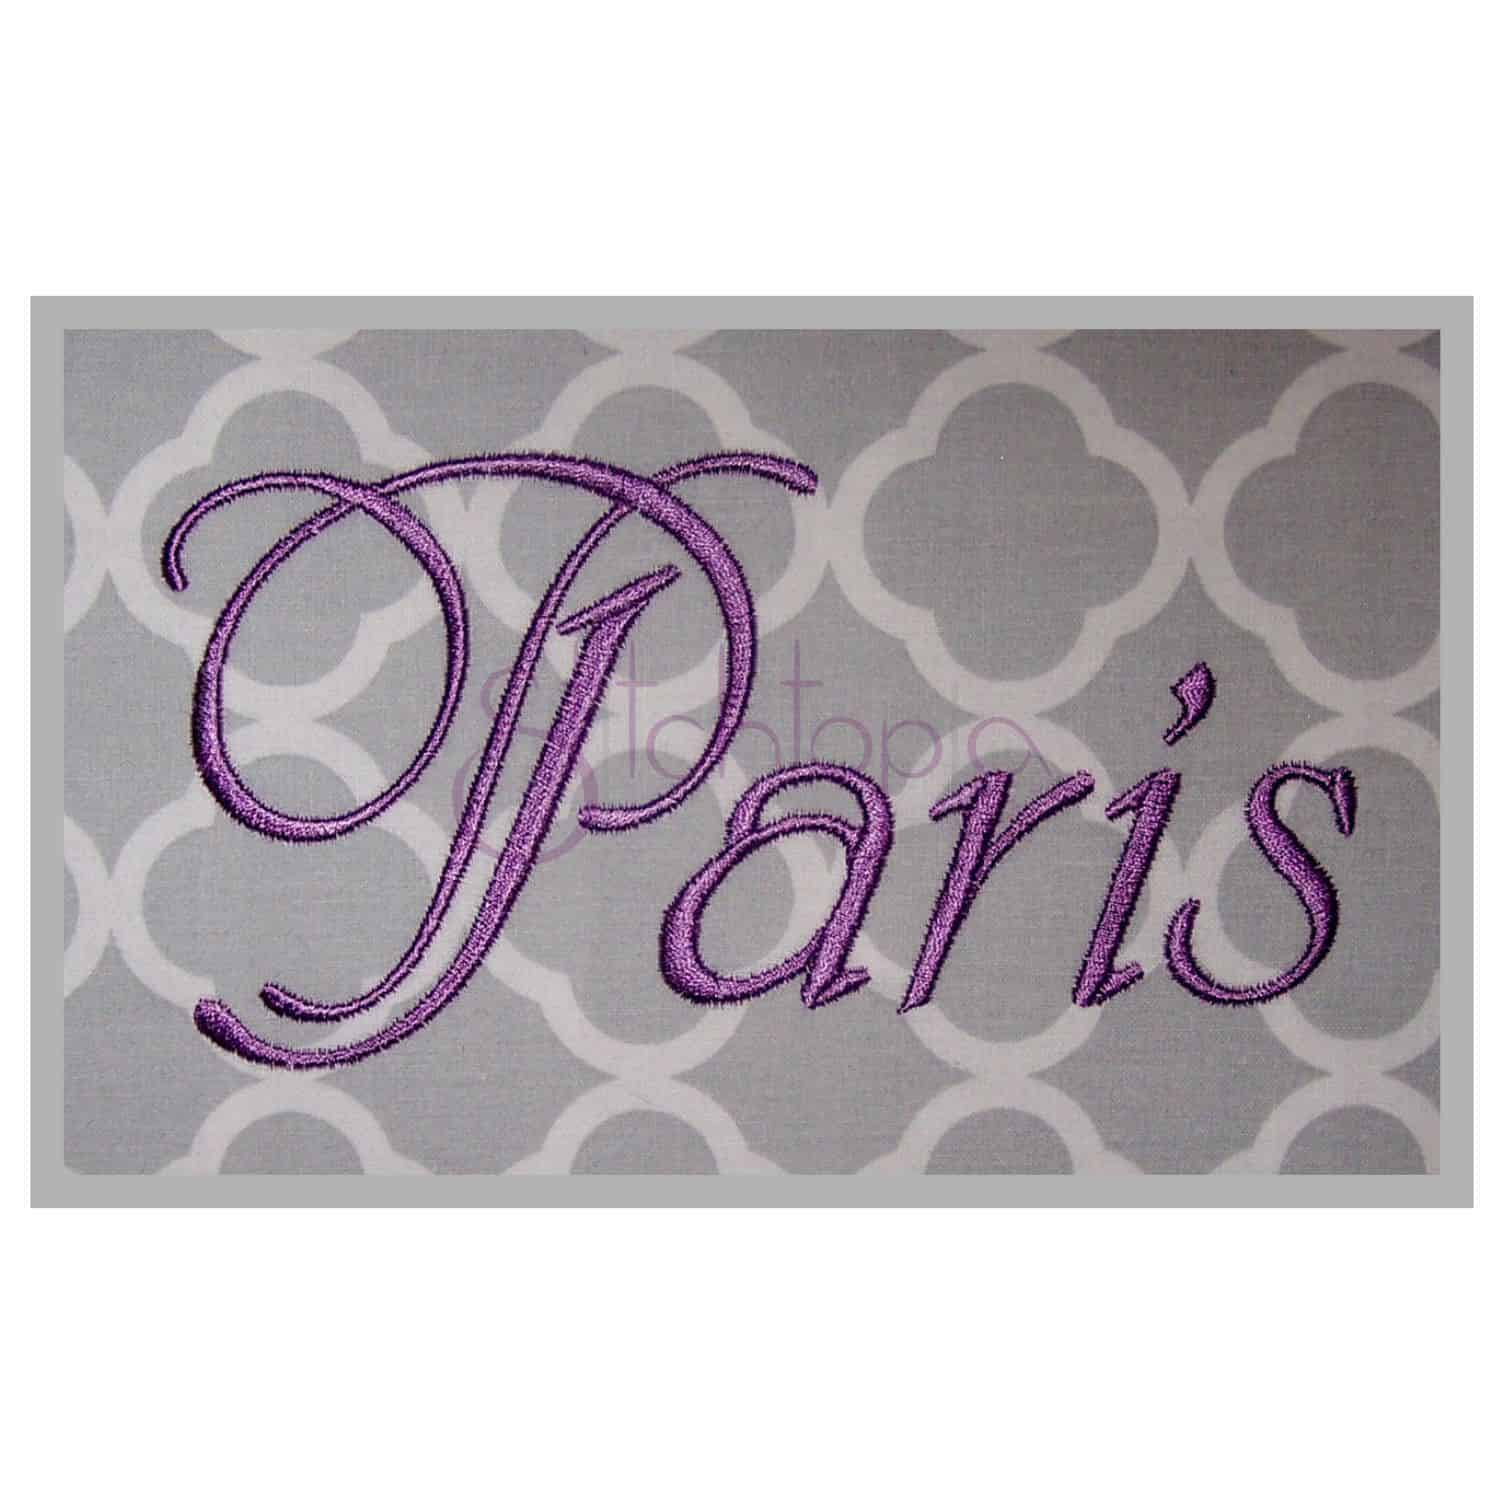 Paris embroidery font